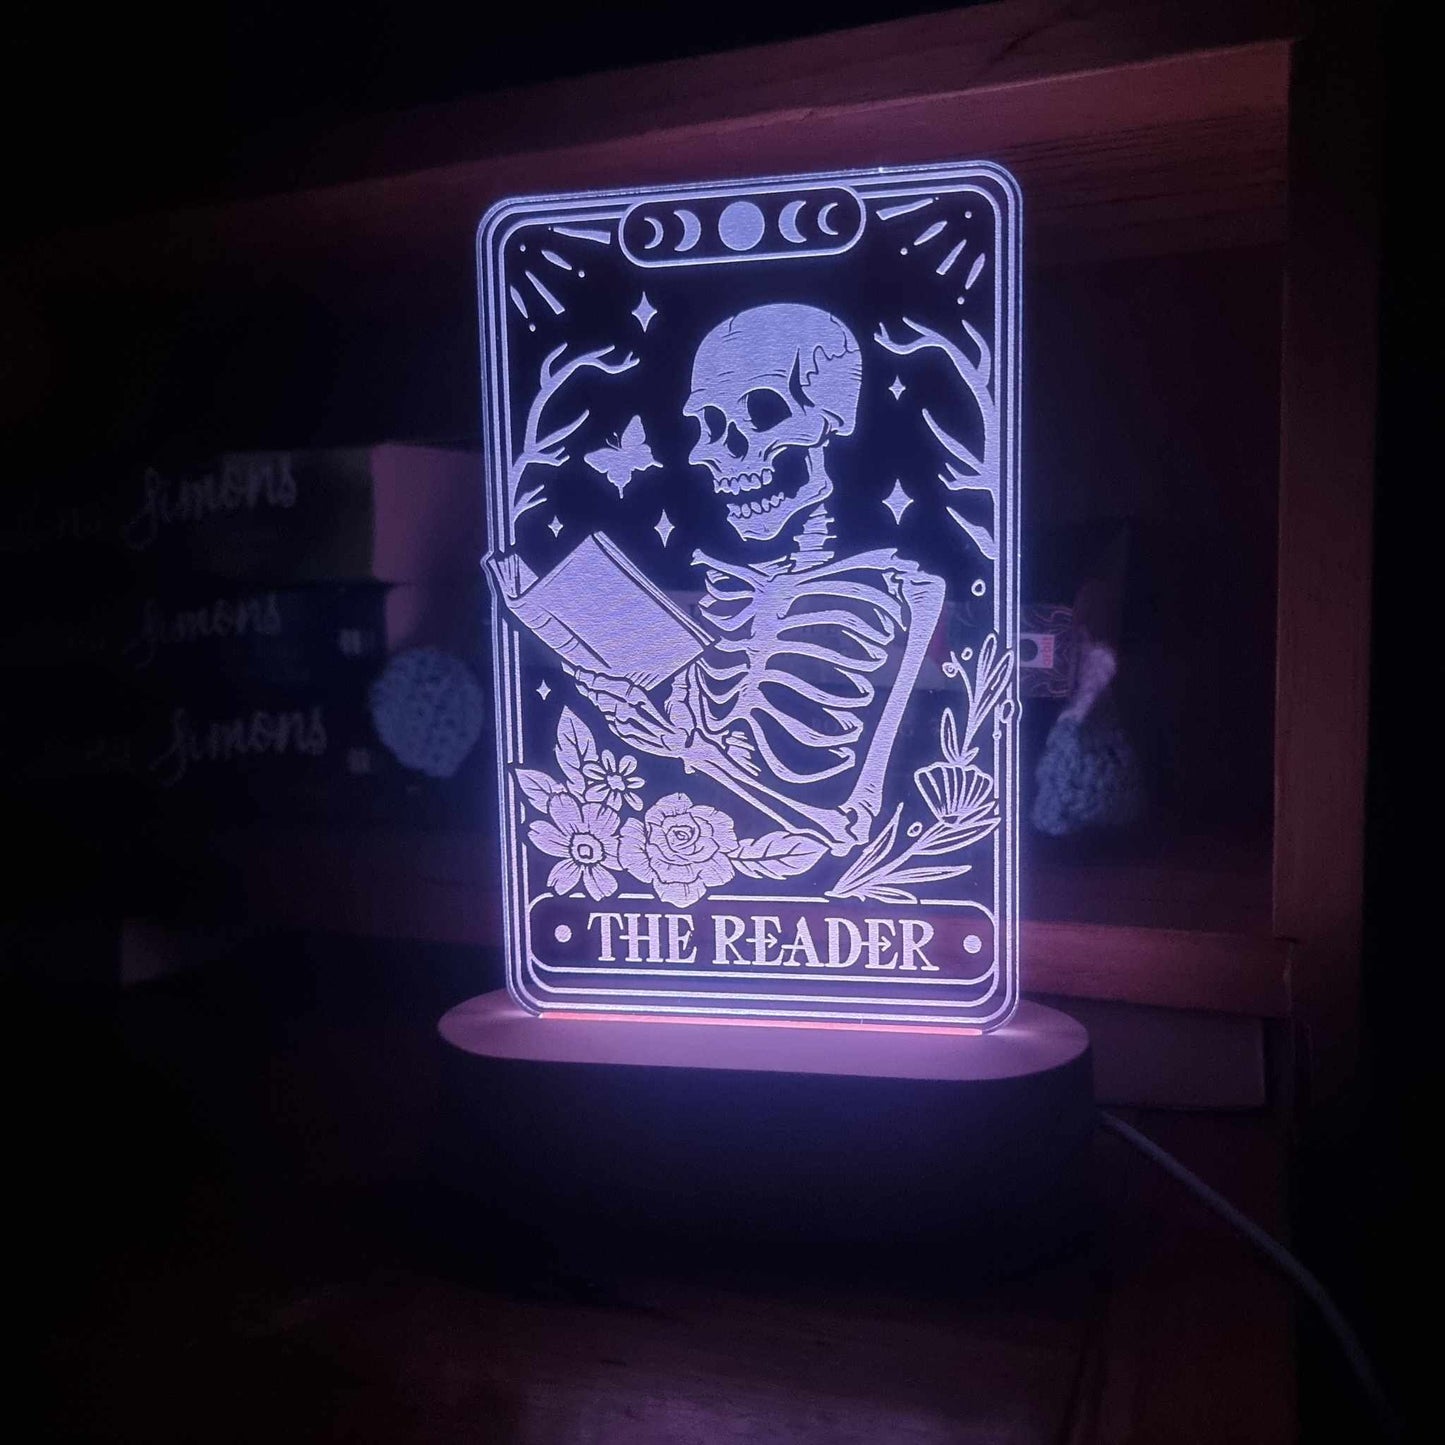 The reader nightlight